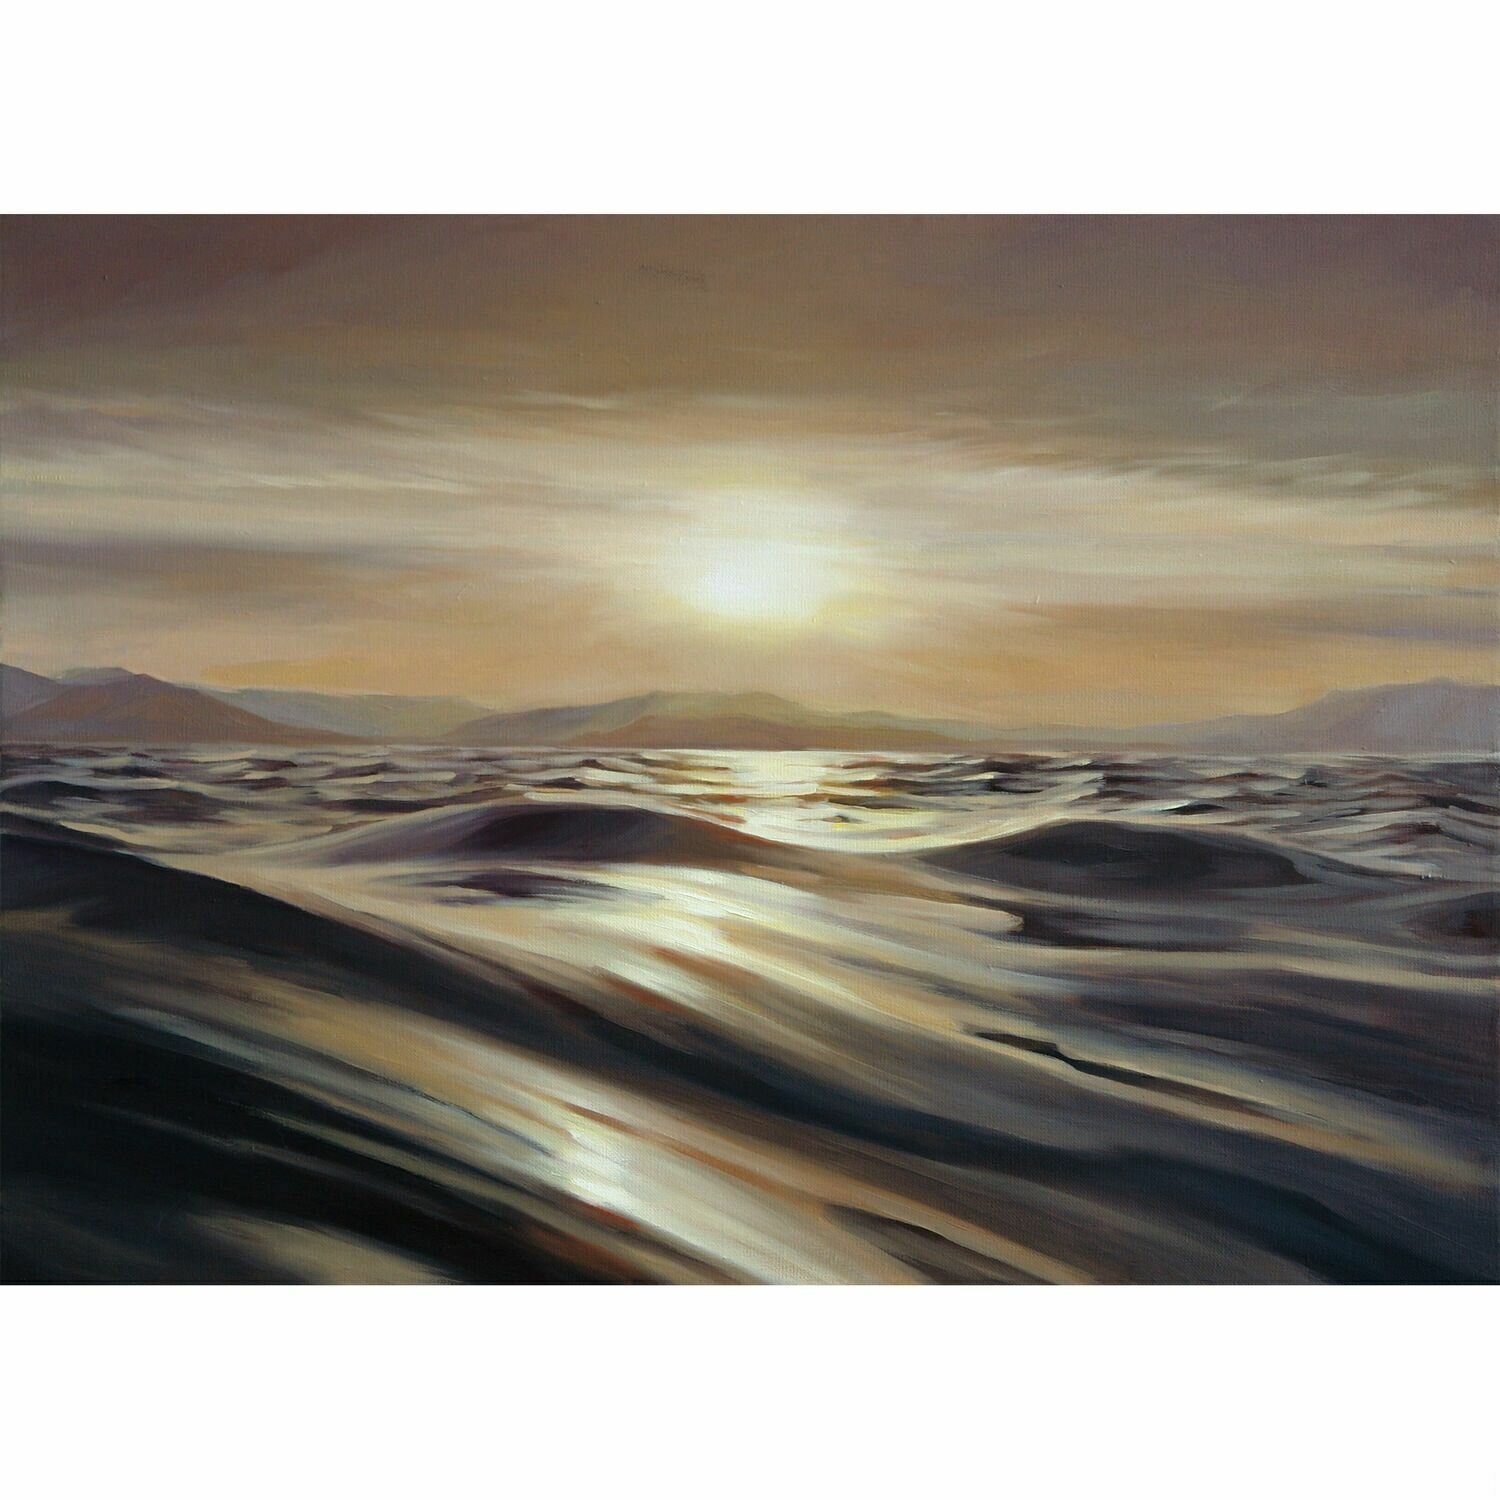 Картина маслом ручной работы "Золотой закат", холст 50х70 см, для интерьера, морской пейзаж